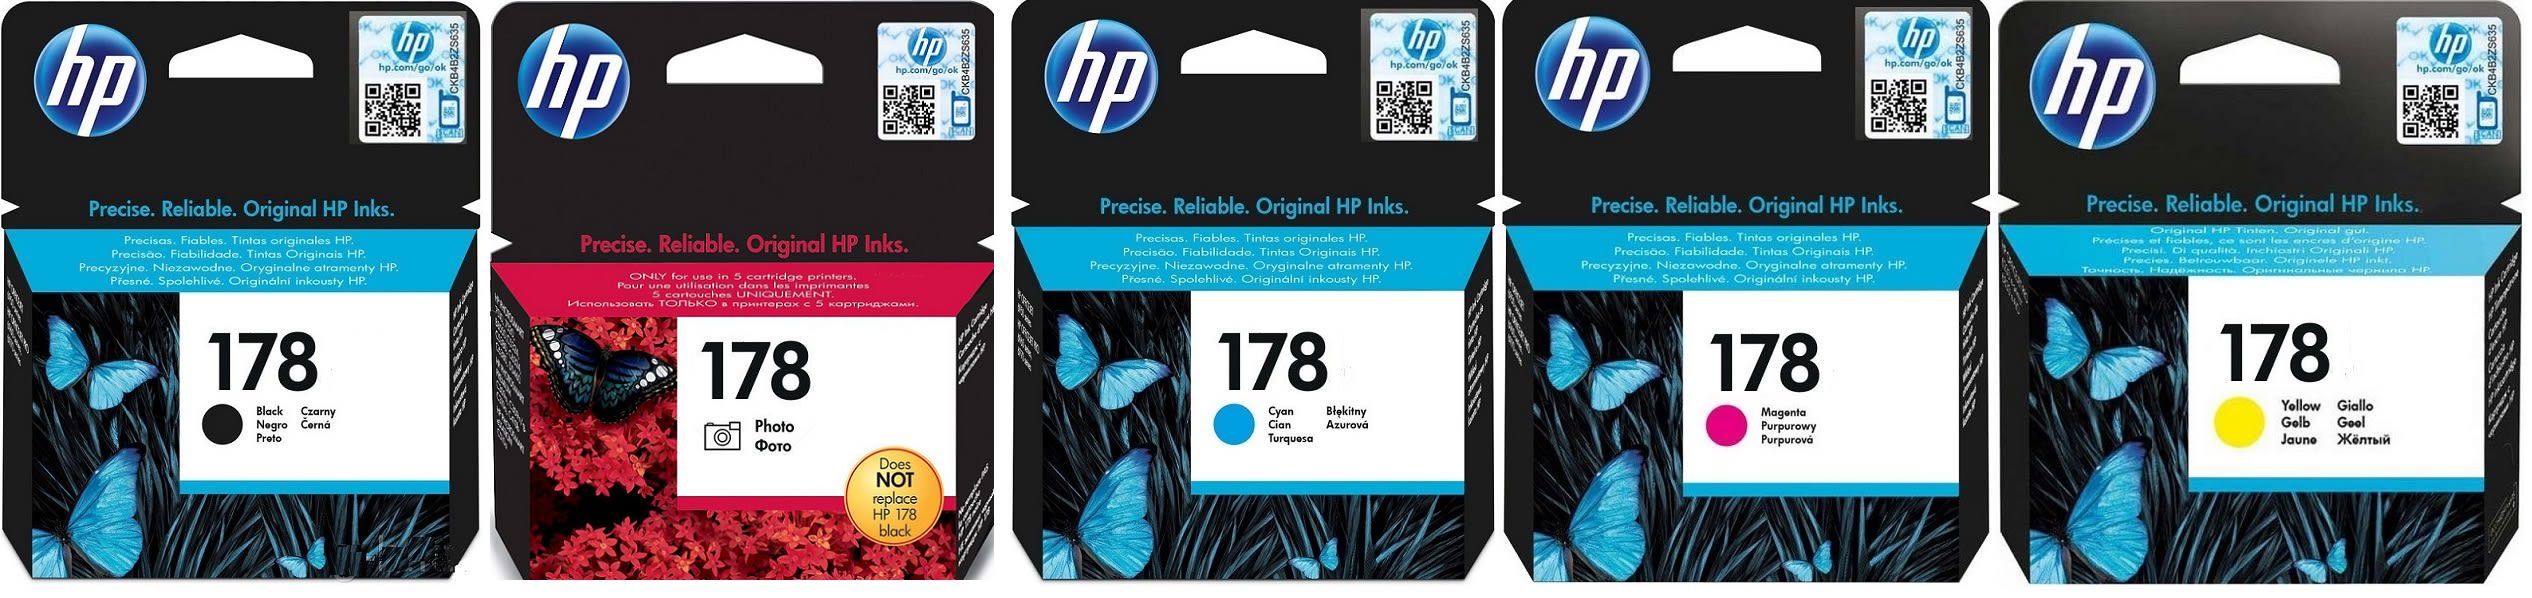 Картриджи hp 178 для HP Photosmart 6510 B211b. Купить комплект оригинальных картриджей.